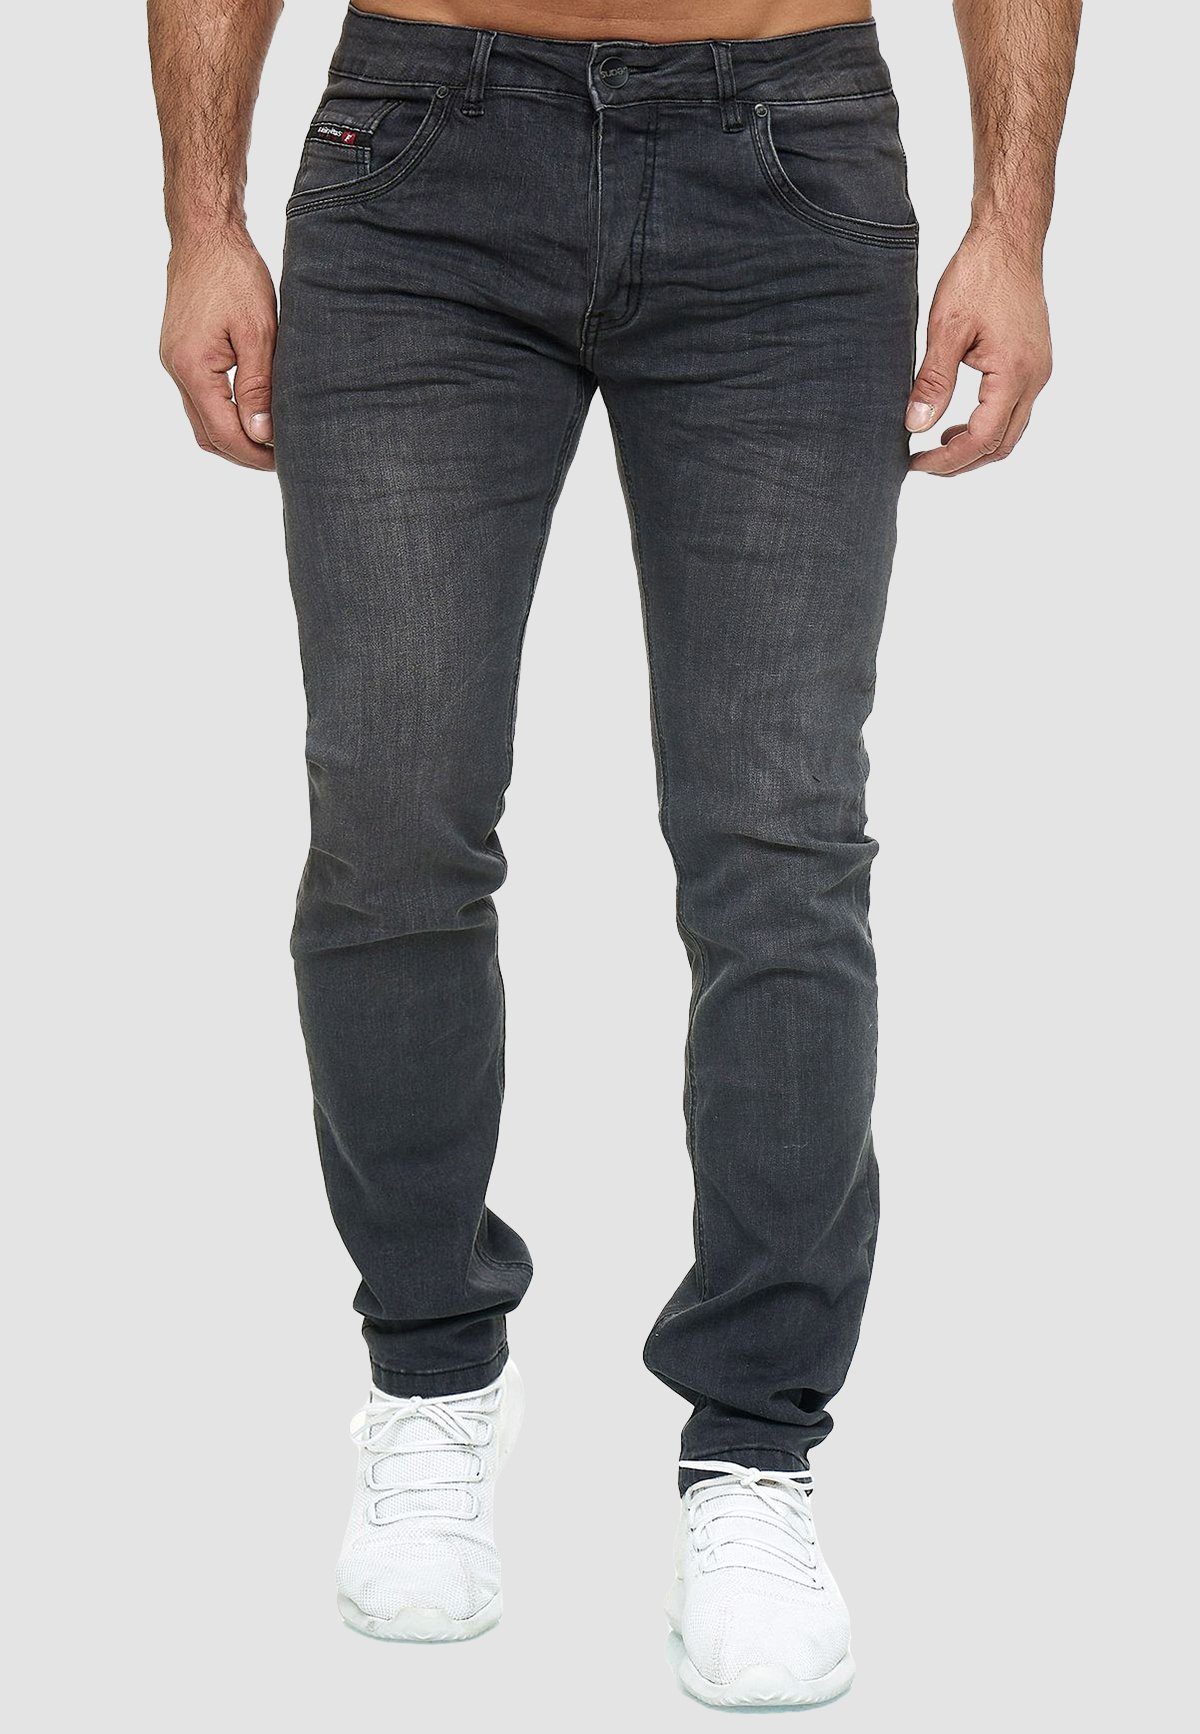 WANGUE Slim-fit-Jeans »Herren Jeans Klassisch Denim Grau Hose« (1-tlg) 3059  in Grau online kaufen | OTTO